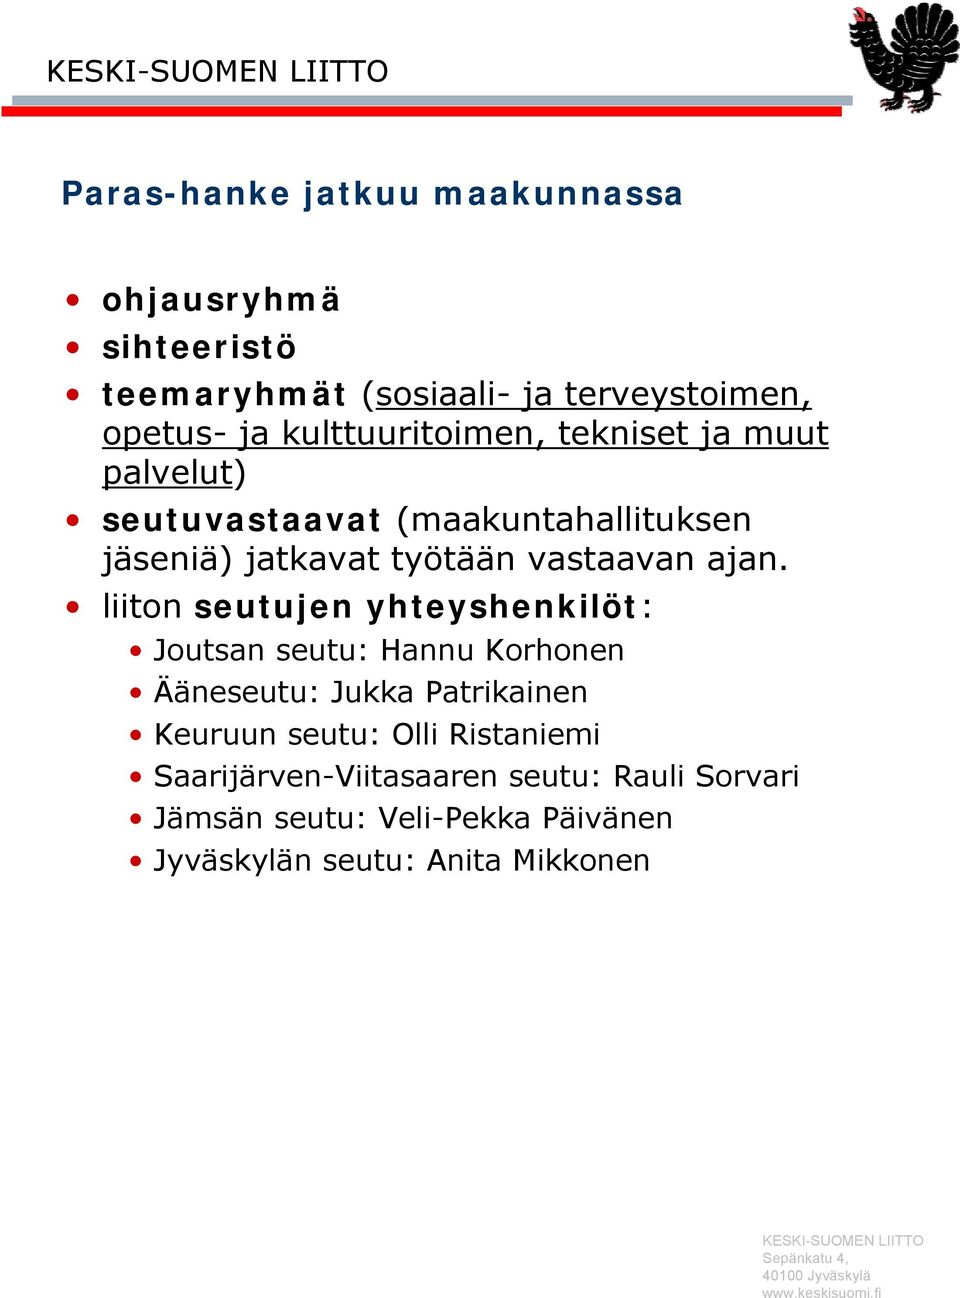 ajan. liiton seutujen yhteyshenkilöt: Joutsan seutu: Hannu Korhonen Ääneseutu: Jukka Patrikainen Keuruun seutu: